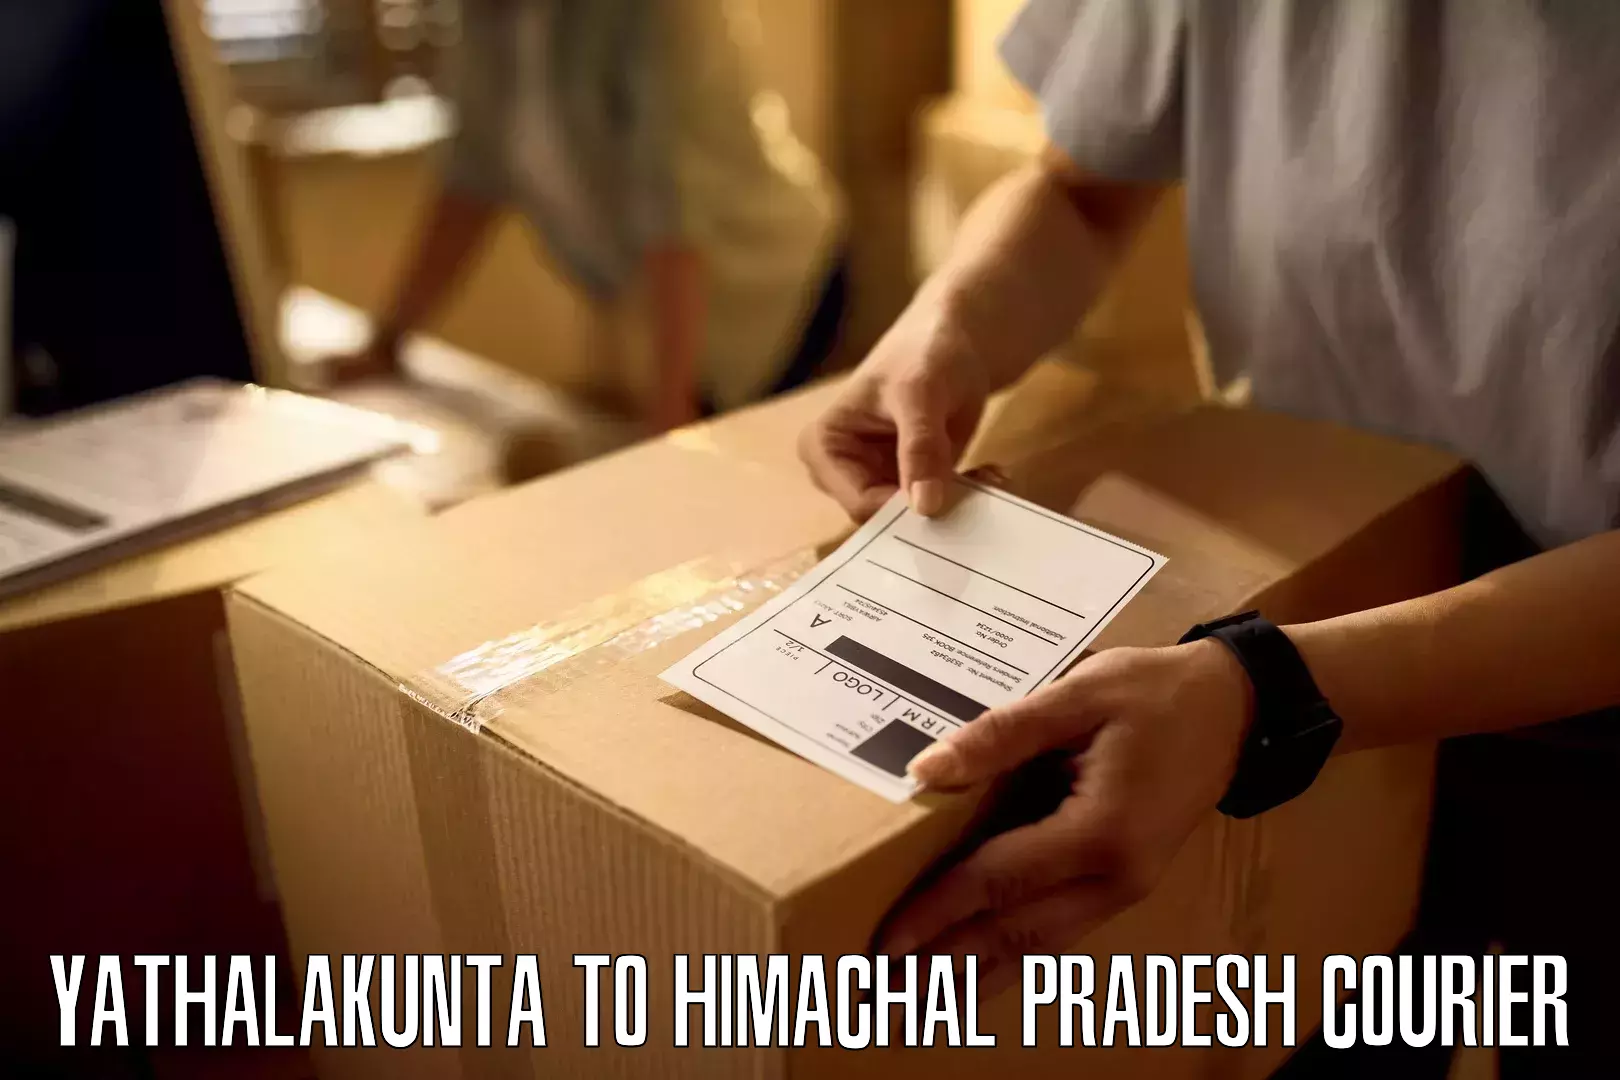 Optimized delivery routes Yathalakunta to Sundla